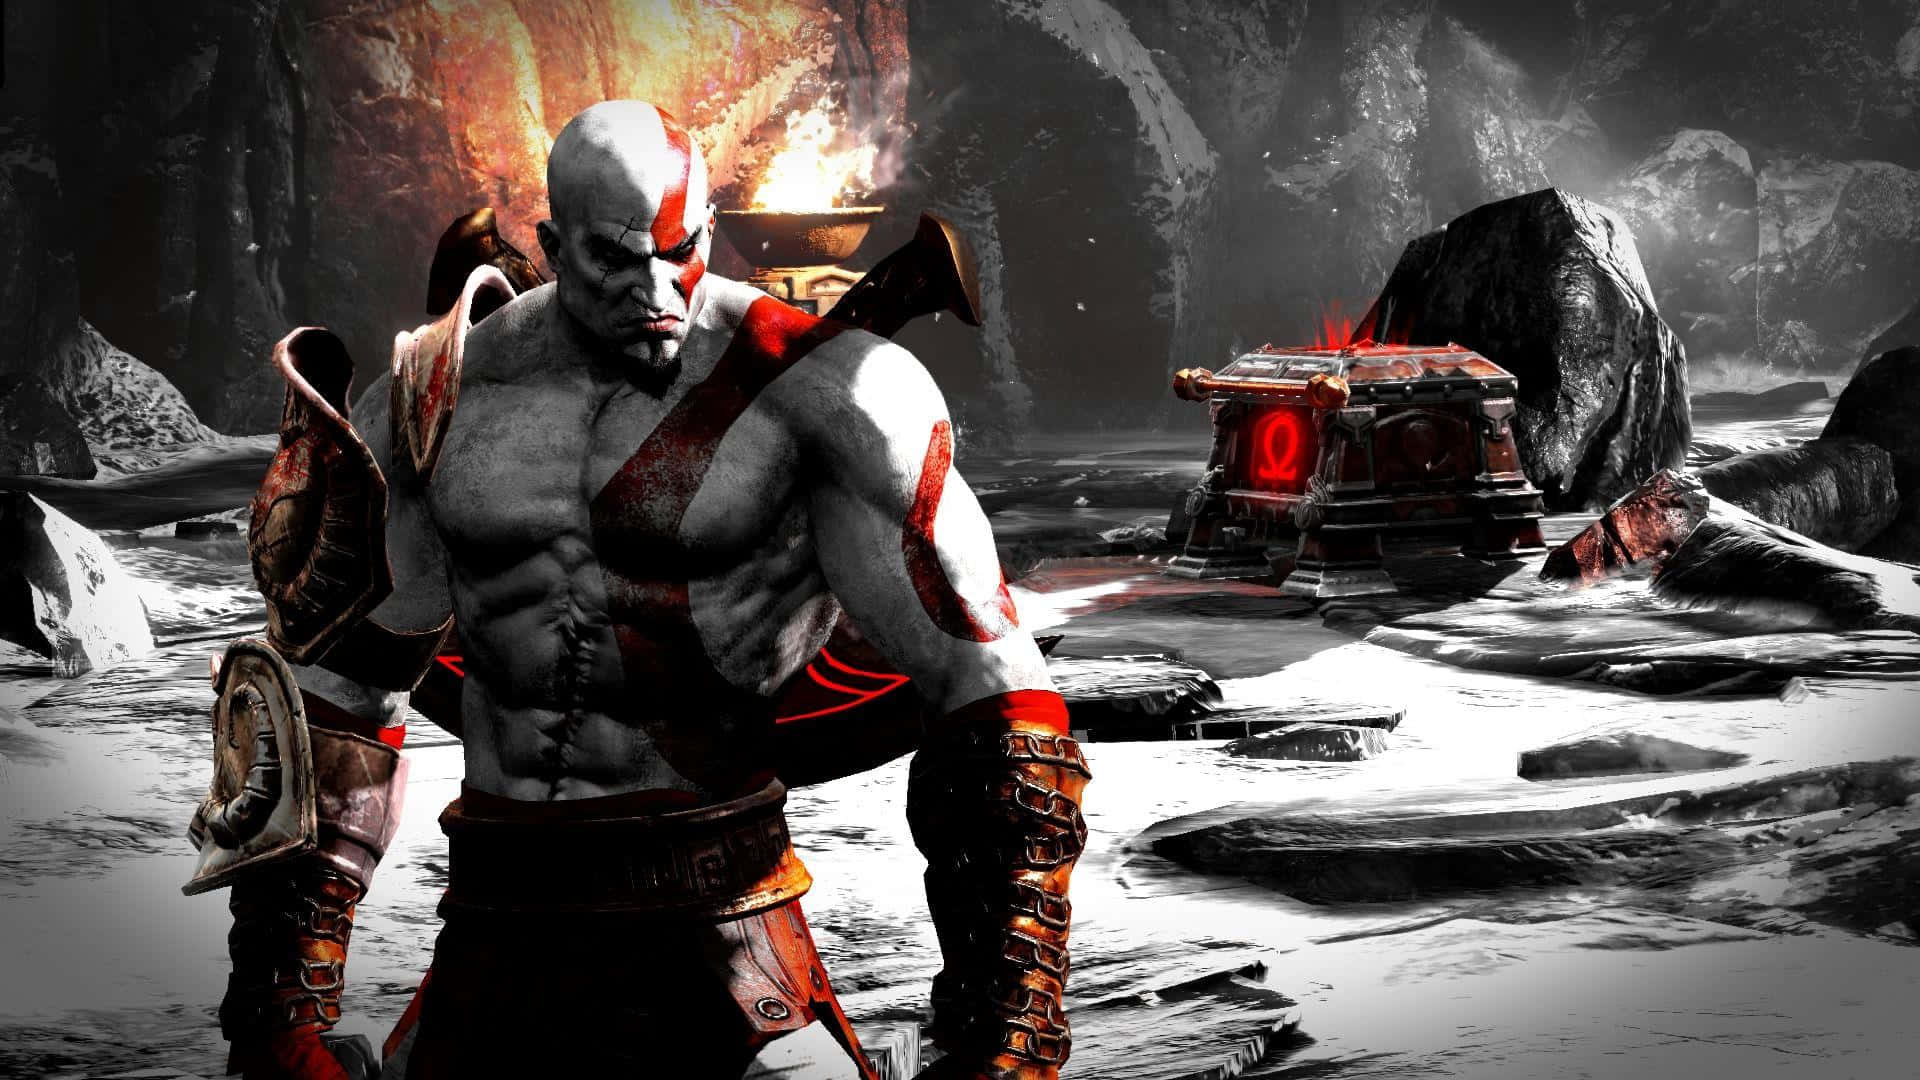 Kratosy Atreus En Una Épica Batalla En God Of War